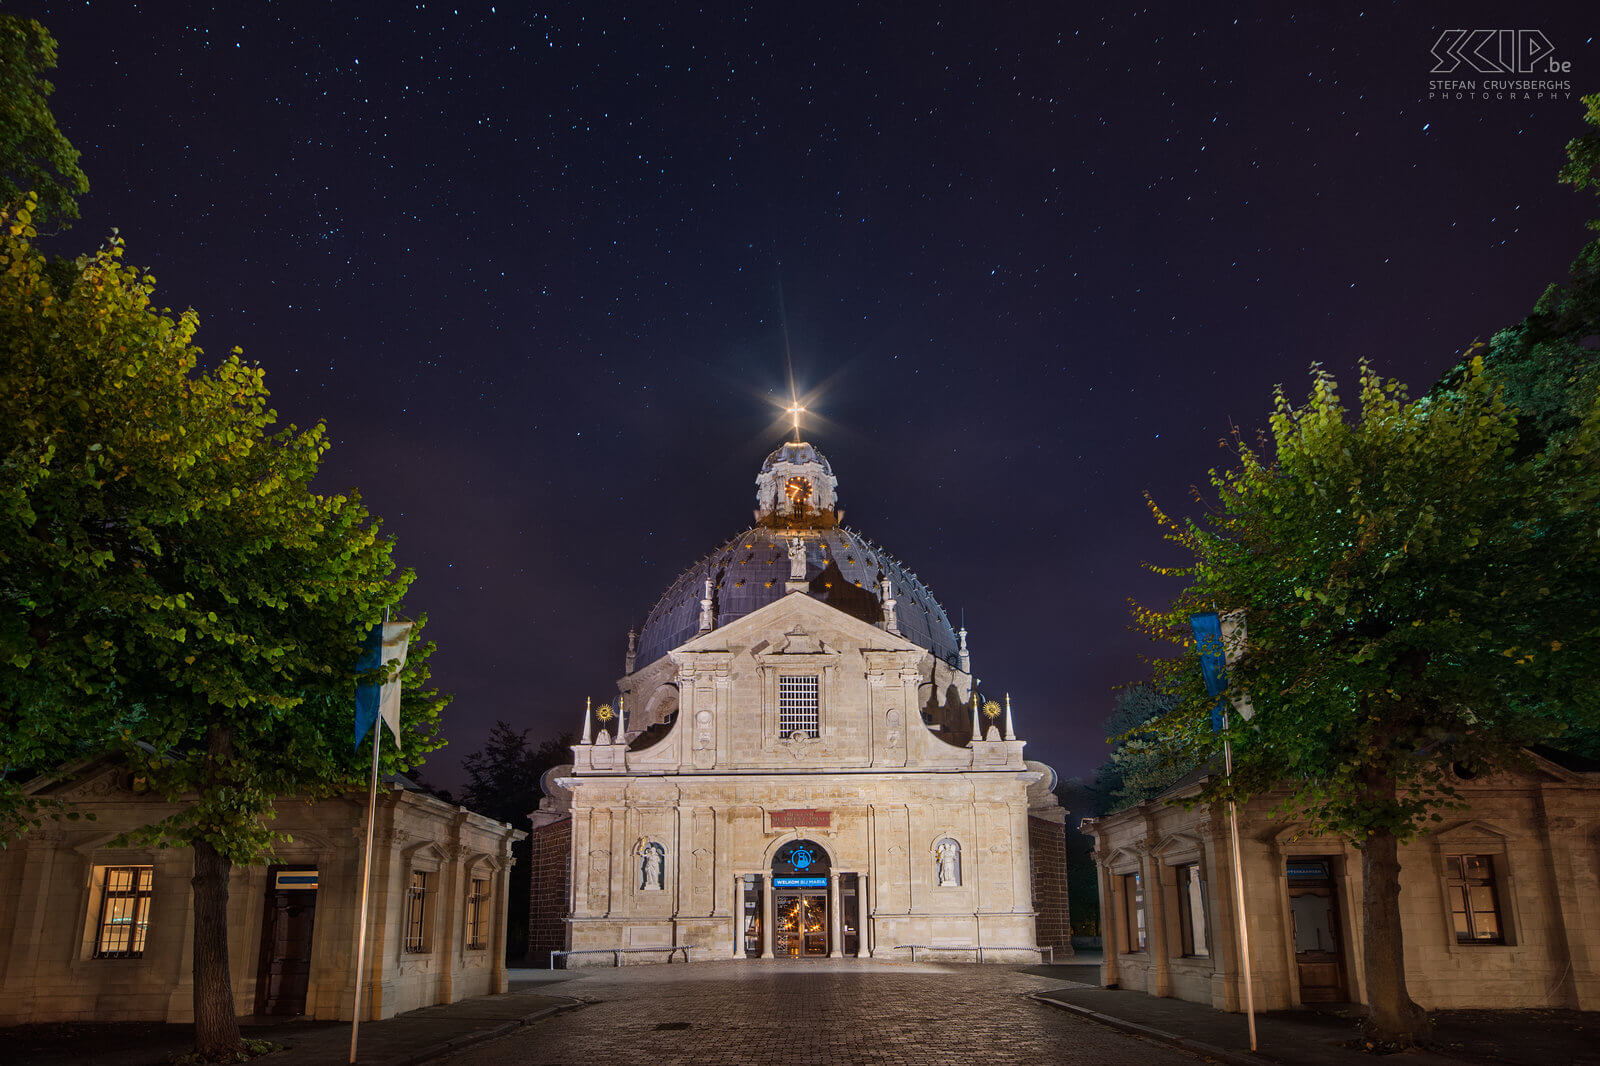 Hageland by night - Basiliek van Scherpenheuvel De barokke Basiliek van Onze-Lieve-Vrouw van Scherpenheuvel is een van de belangrijkste bedevaartsoorden in België. De kerk werd ingewijd in 1627 en de kerk werd tot basiliek verheven in 1922. Stefan Cruysberghs